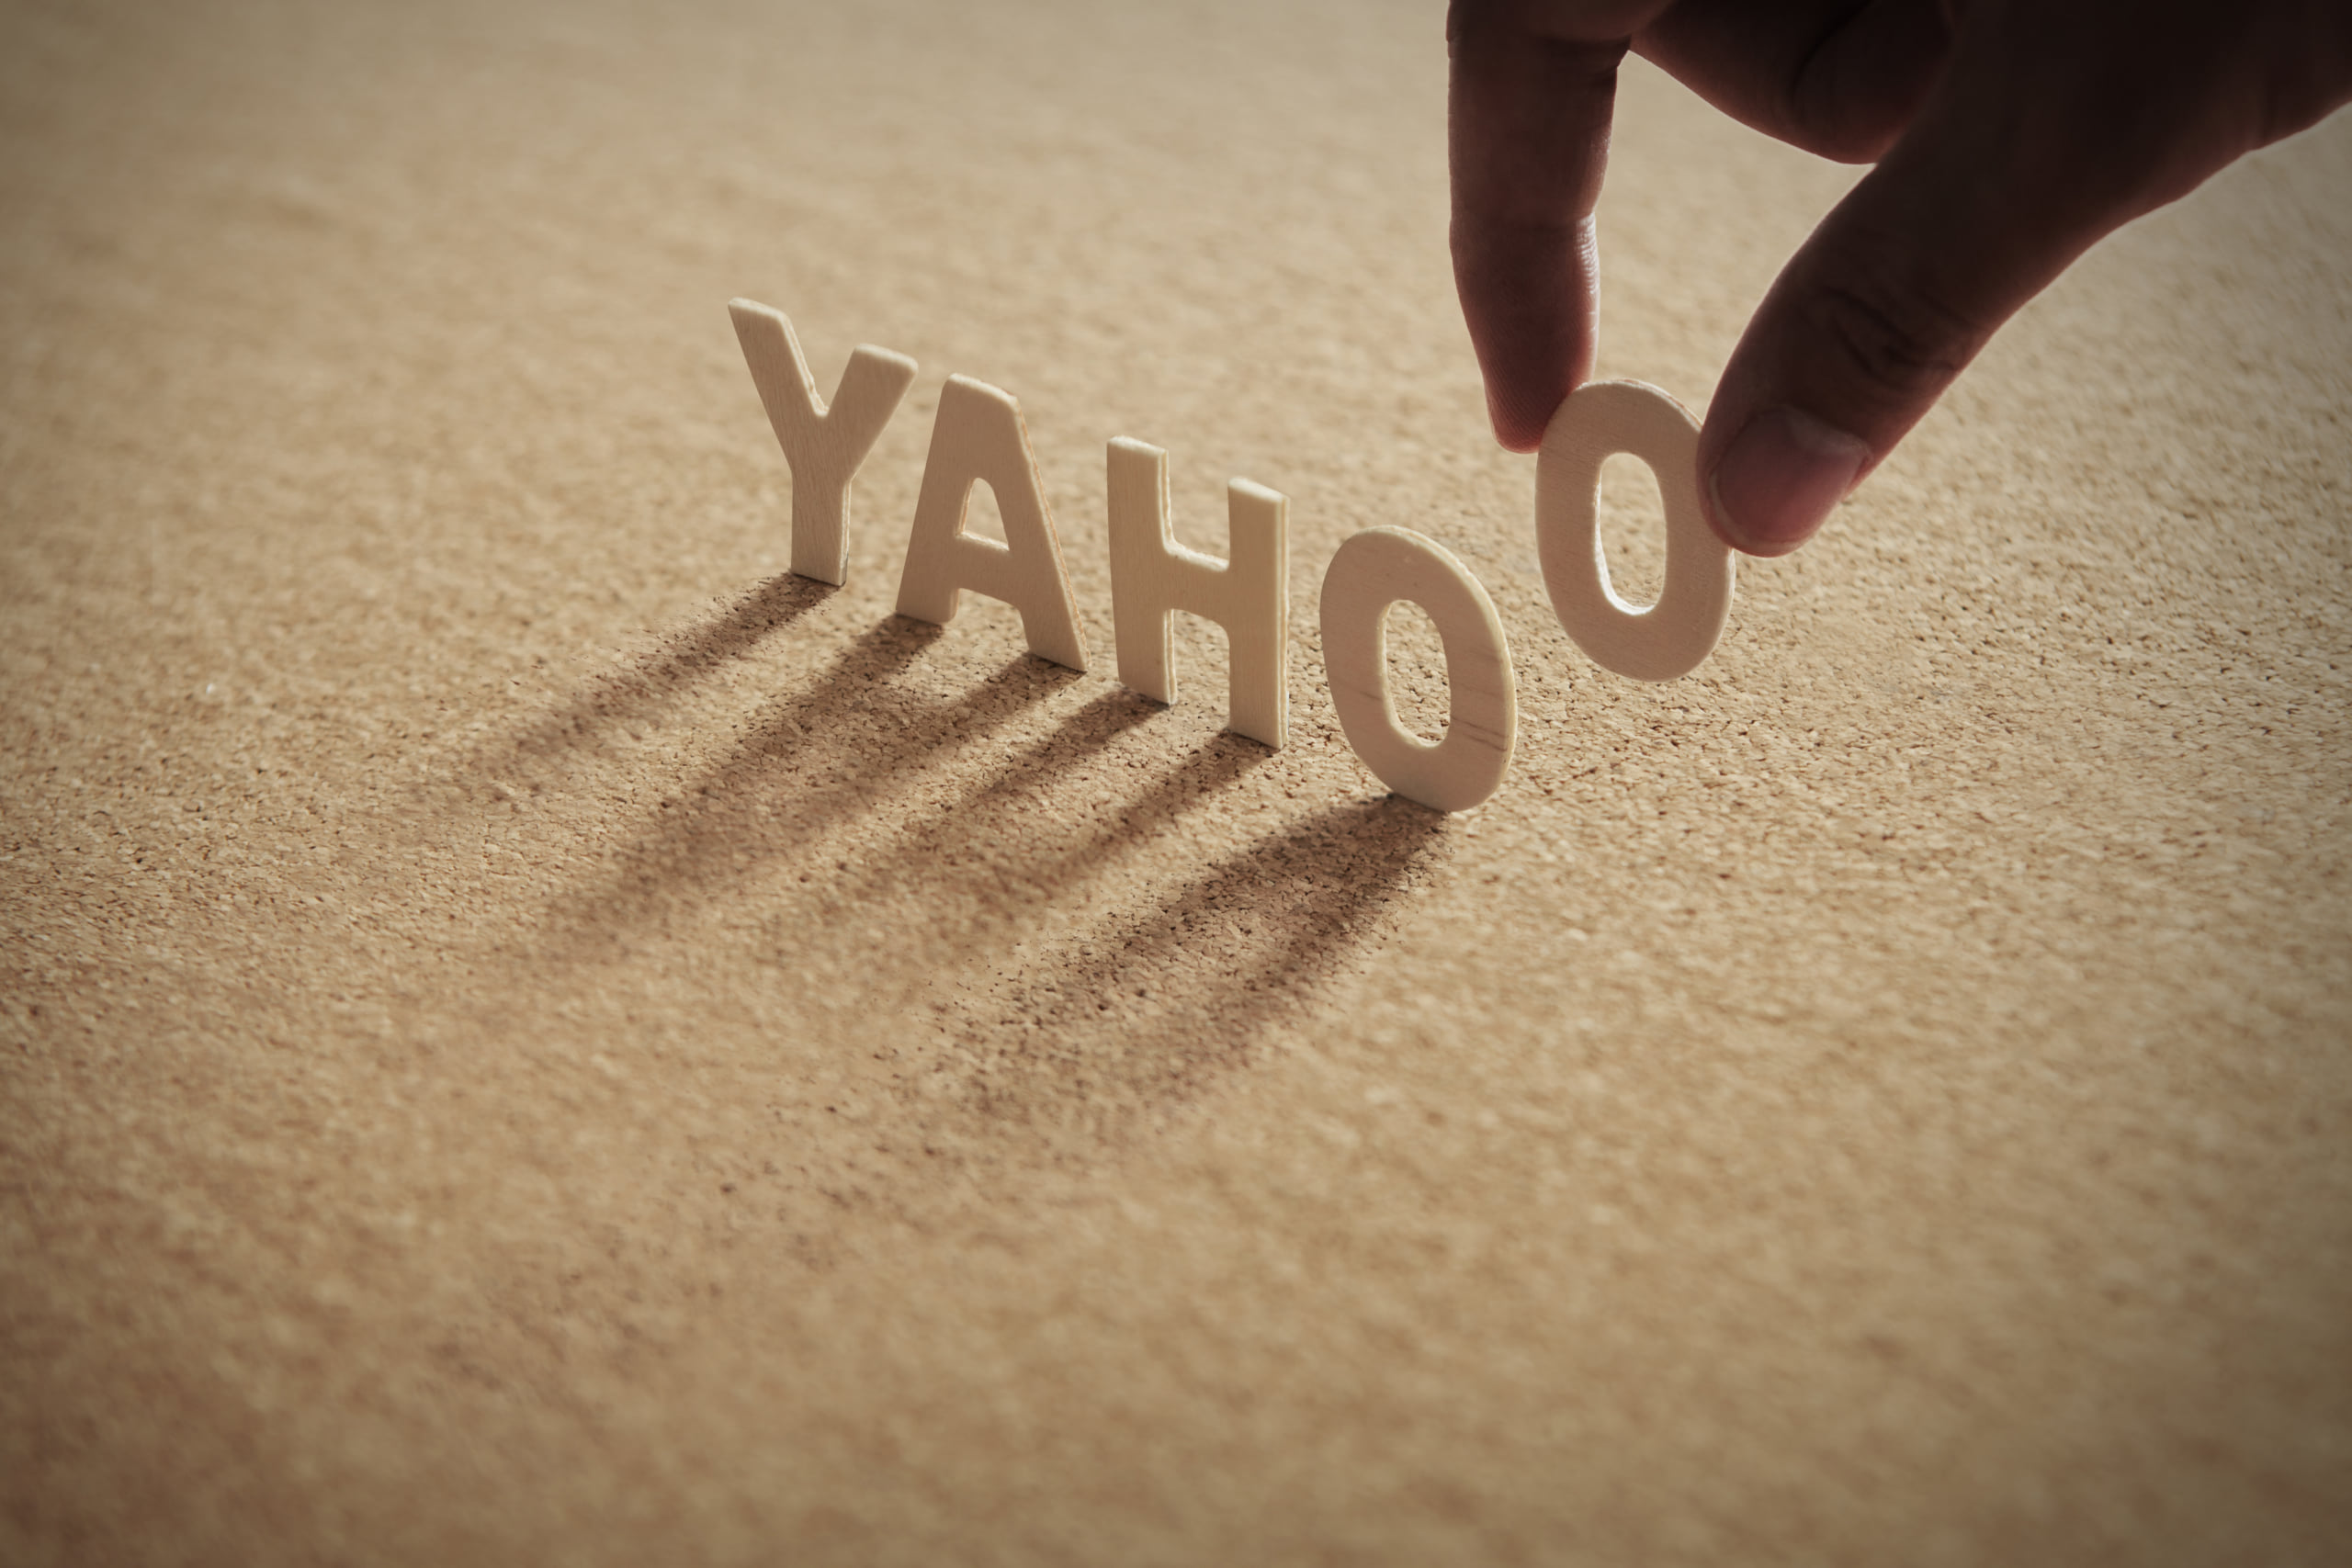 Yahoo！広告　リスティング広告　入稿方法